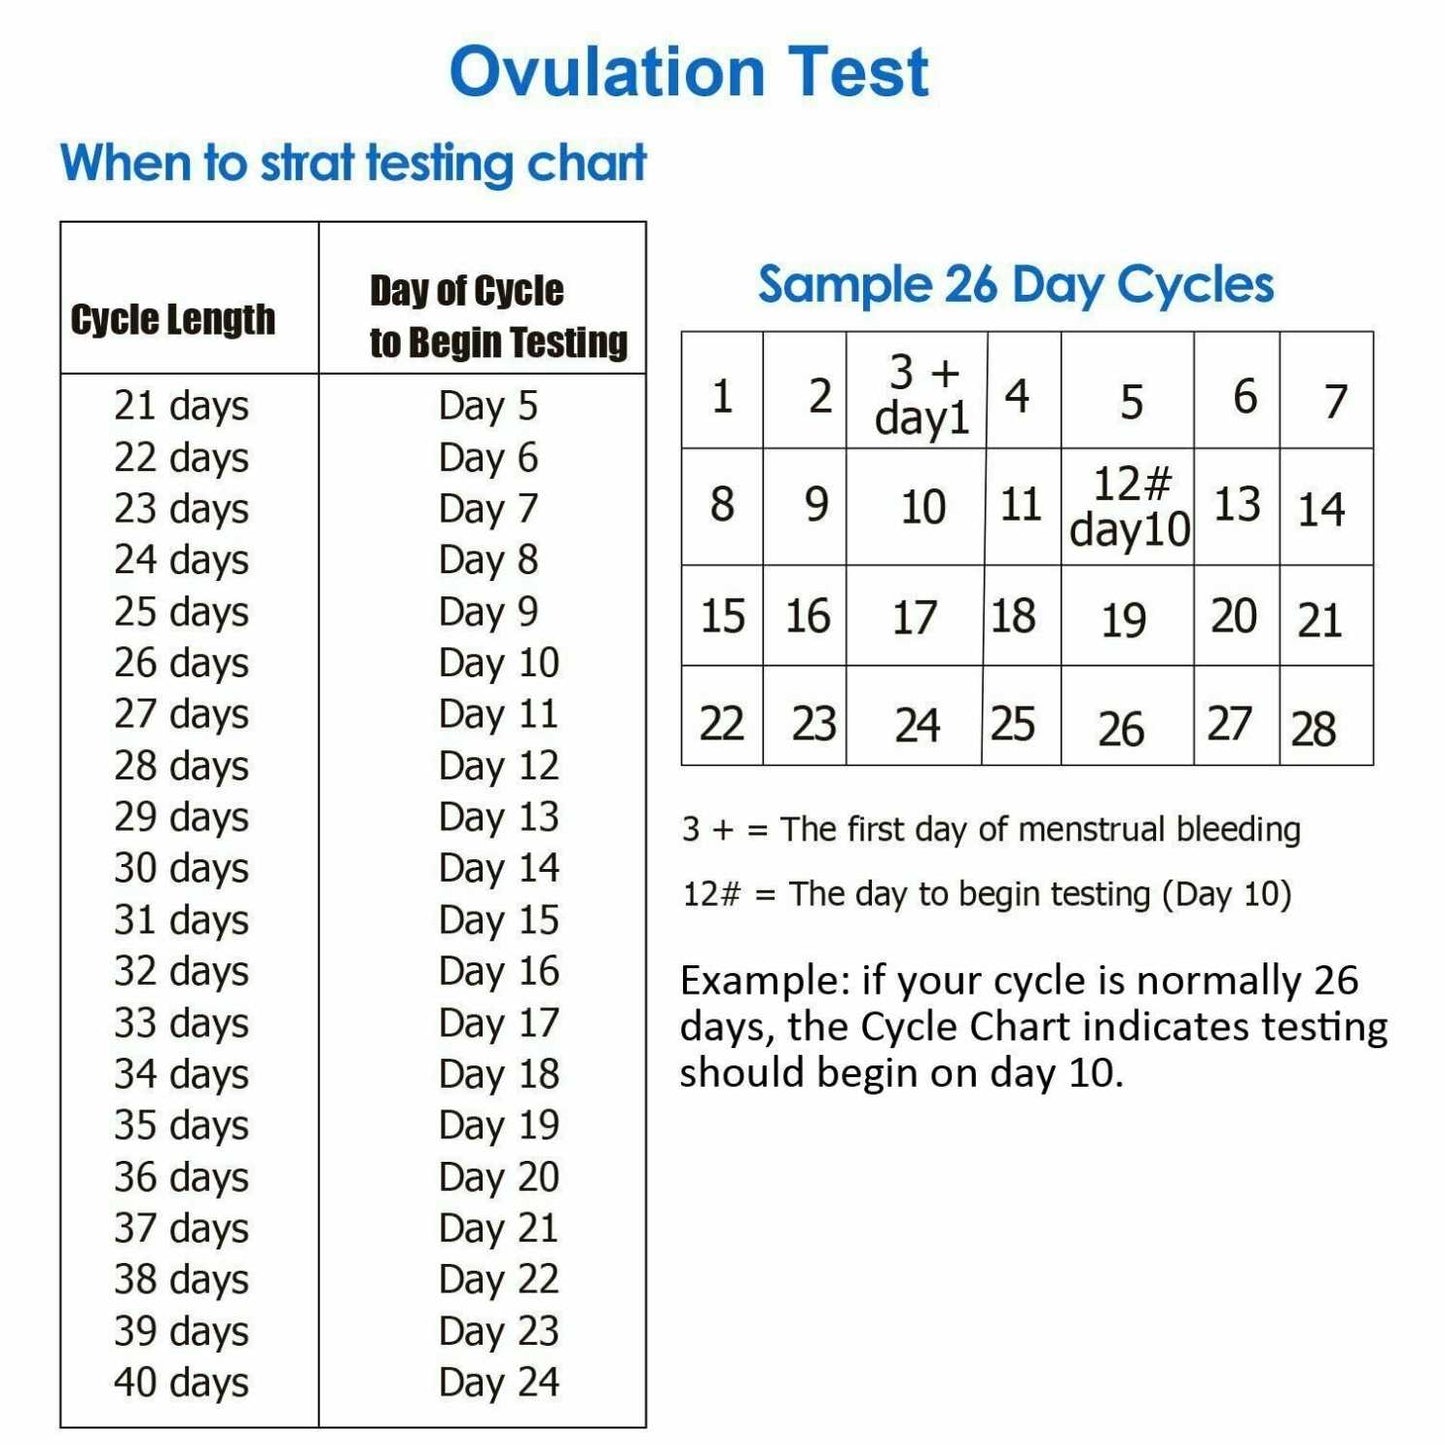 Wondfo Ovulation Tests